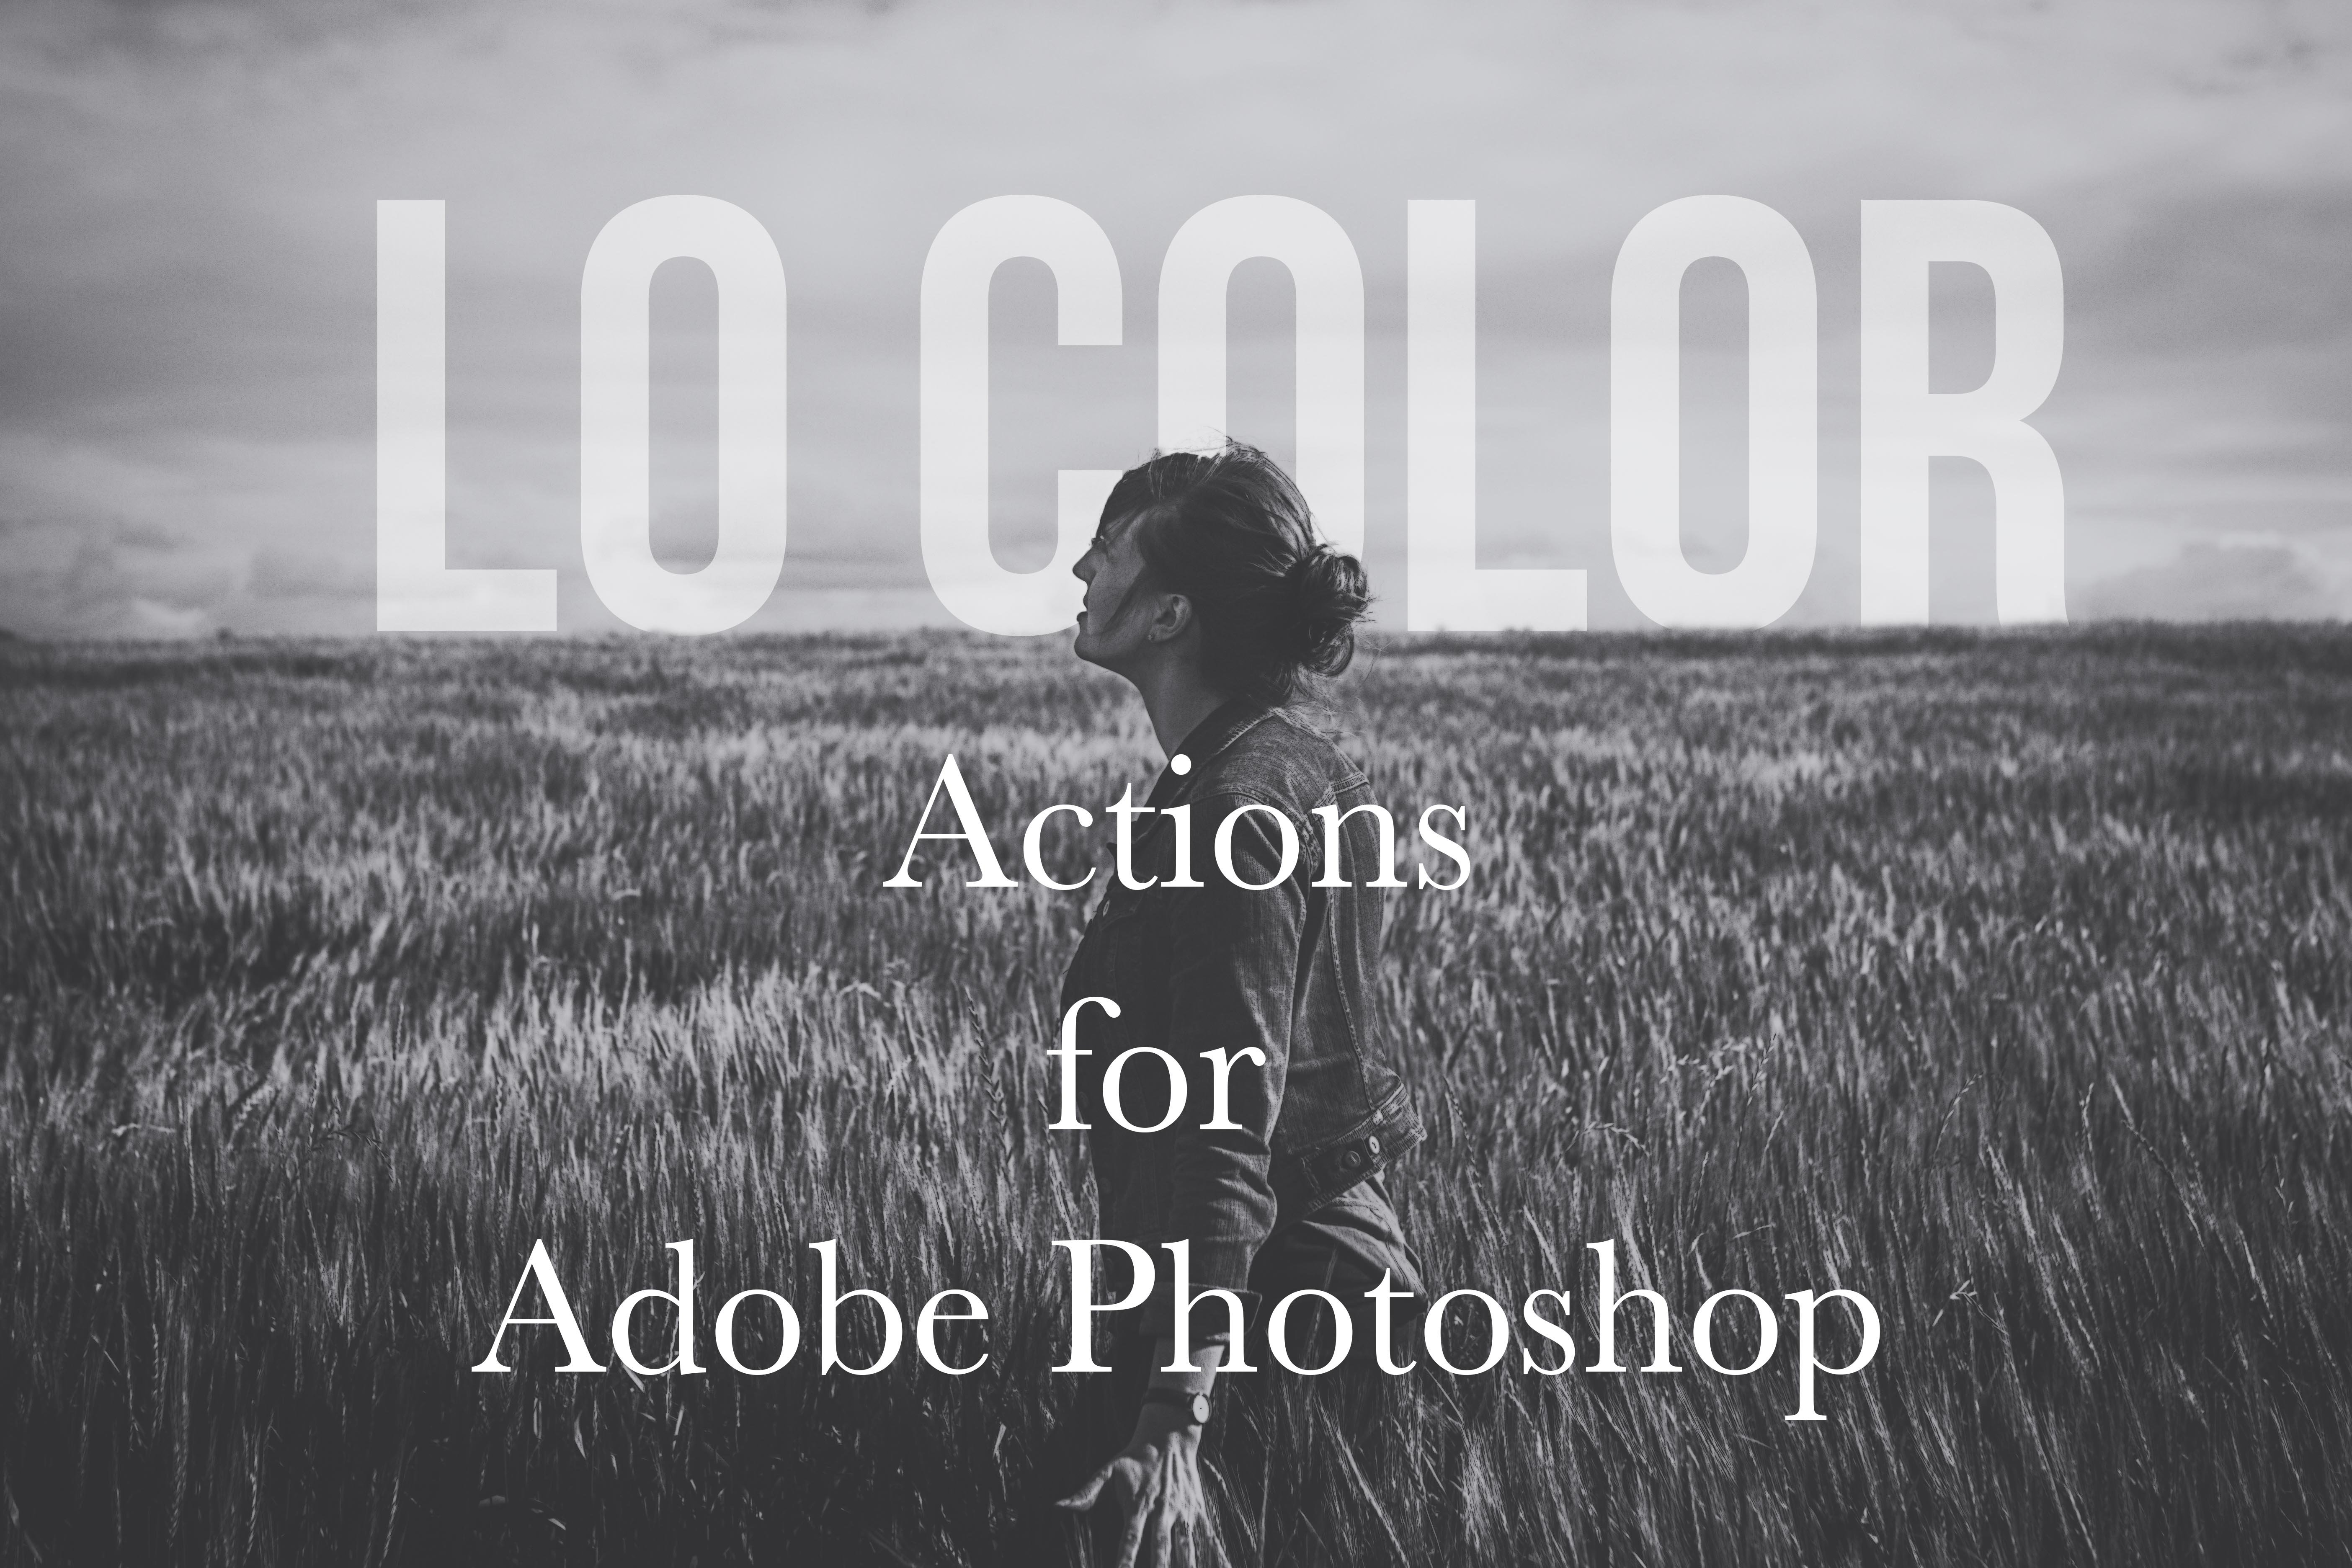 Lo Color Photoshop Matte Action Setcover image.